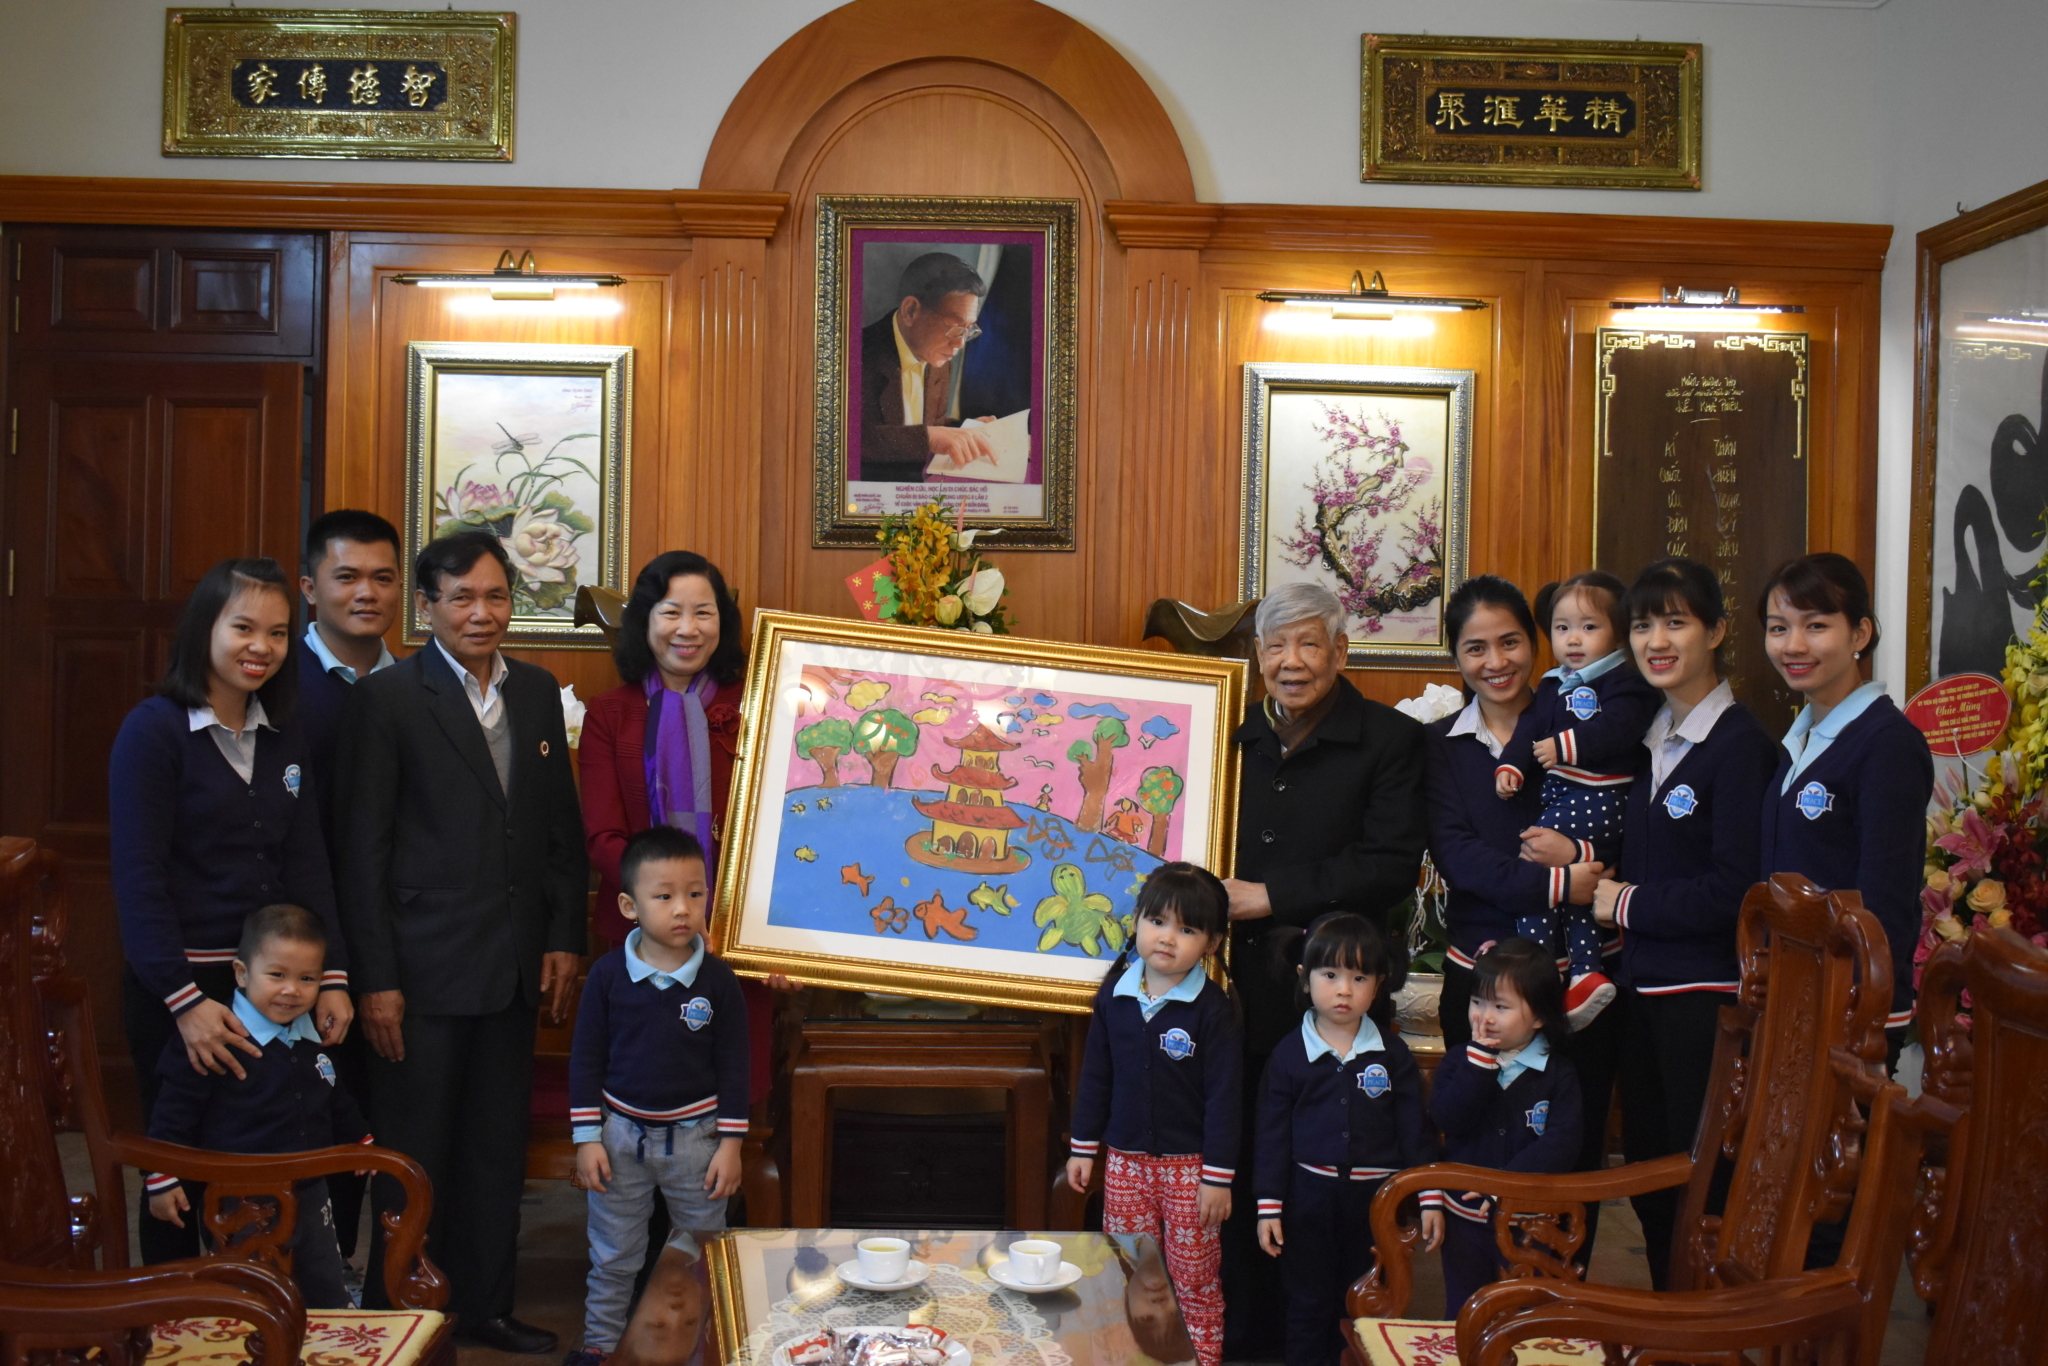 Đại diện trường Peace School, TTNĐ Hòa Bình và các cháu học sinh chúc mừng sinh nhật Nguyên TBT Lê Khả Phiêu